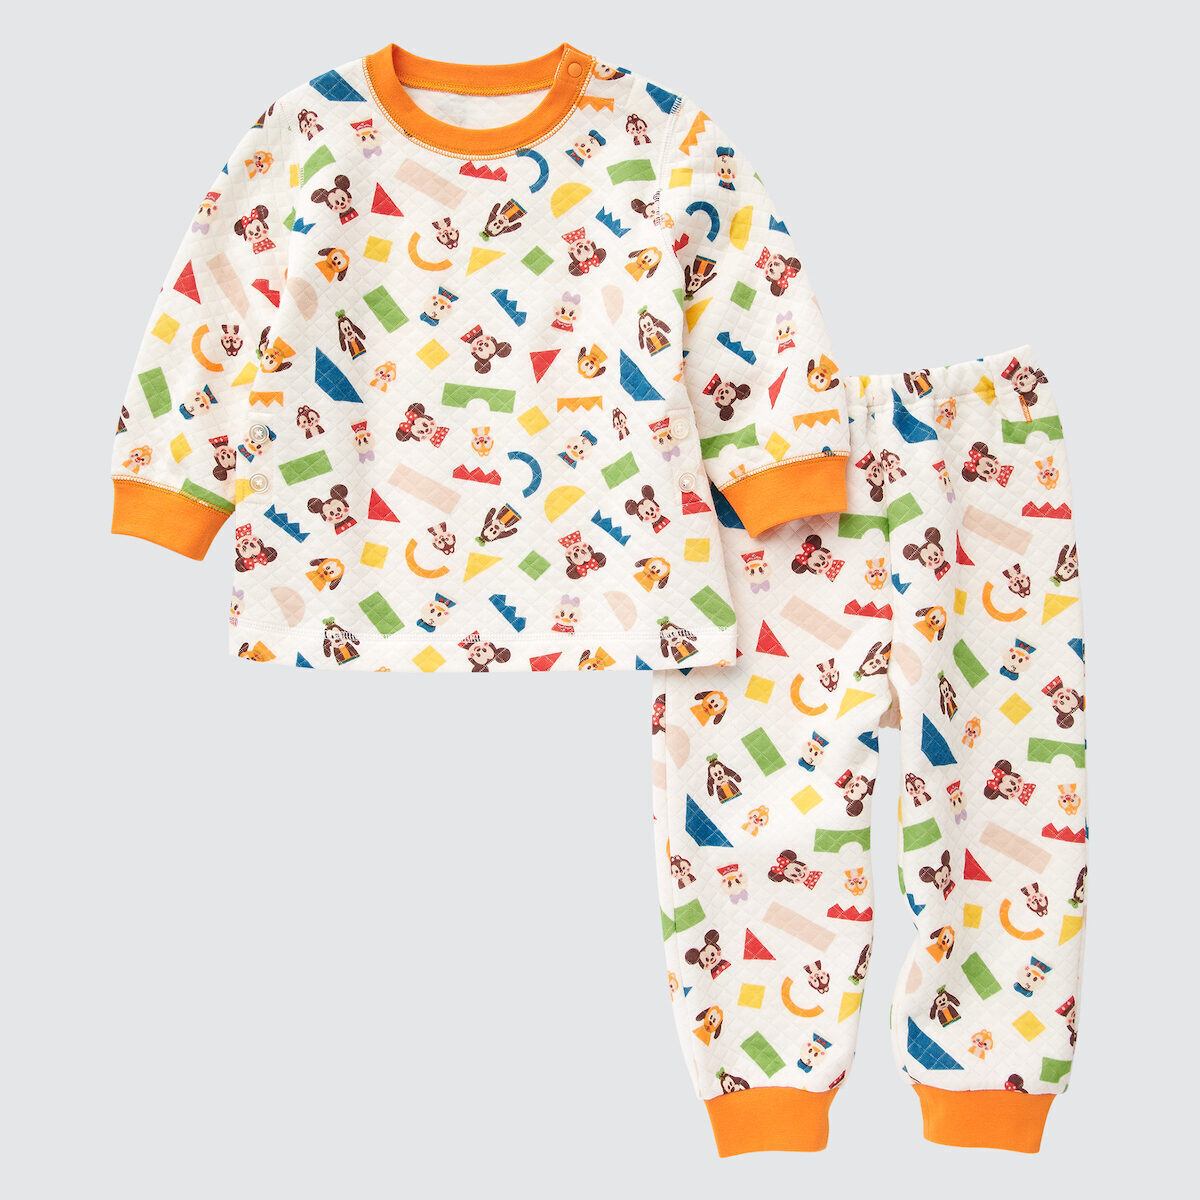 ユニクロ】木製玩具「Disney KIDEA」がパジャマに！ 限定特別デザインのミッキーorミニーKIDEAもプレゼント |